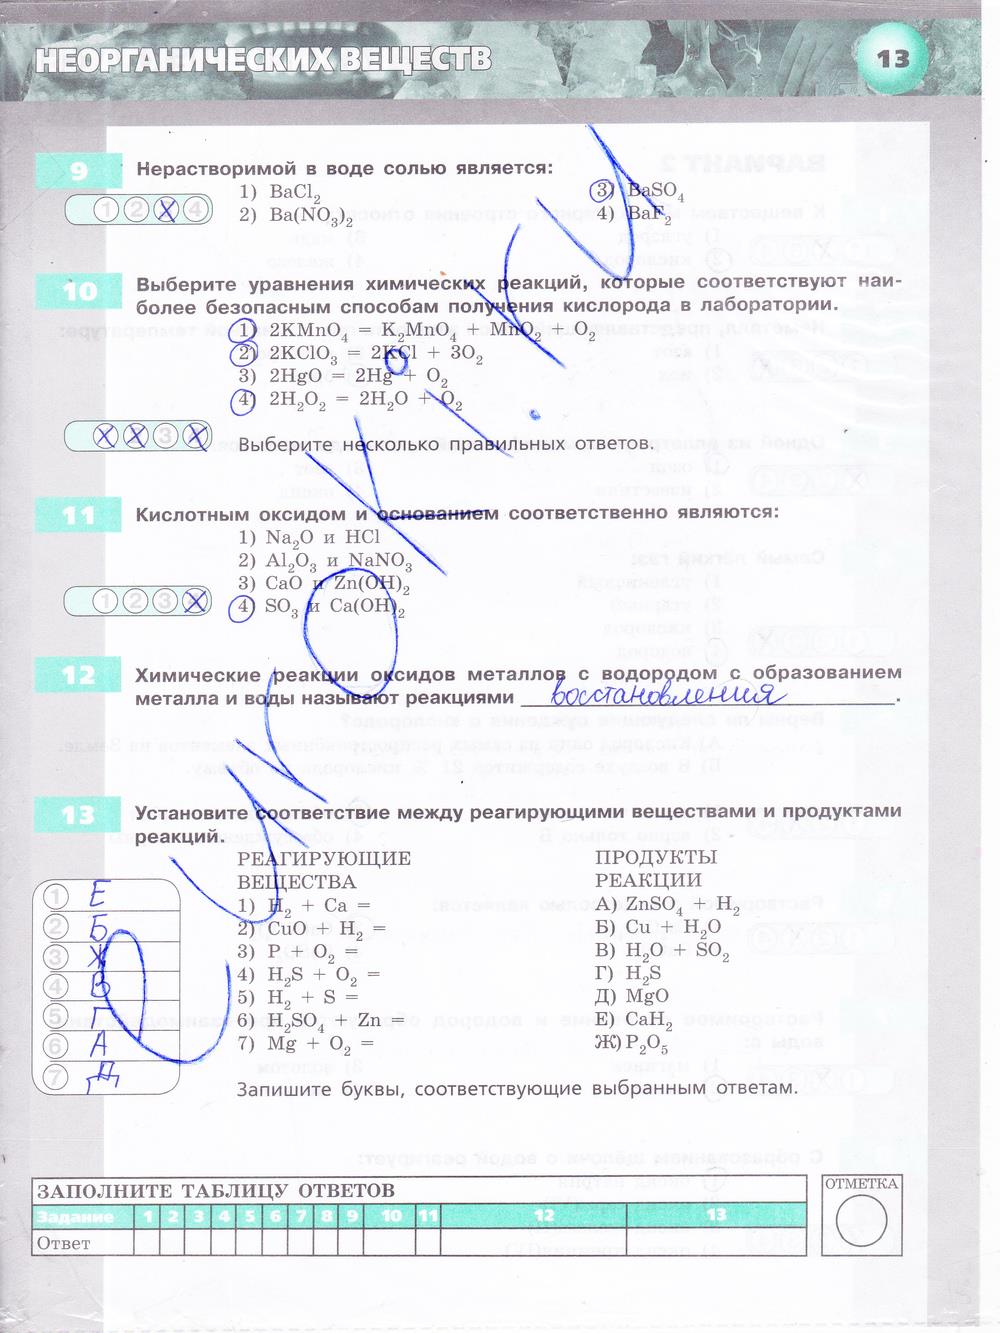 гдз 8 класс тетрадь-экзаменатор страница 13 химия Бобылева, Бирюлина